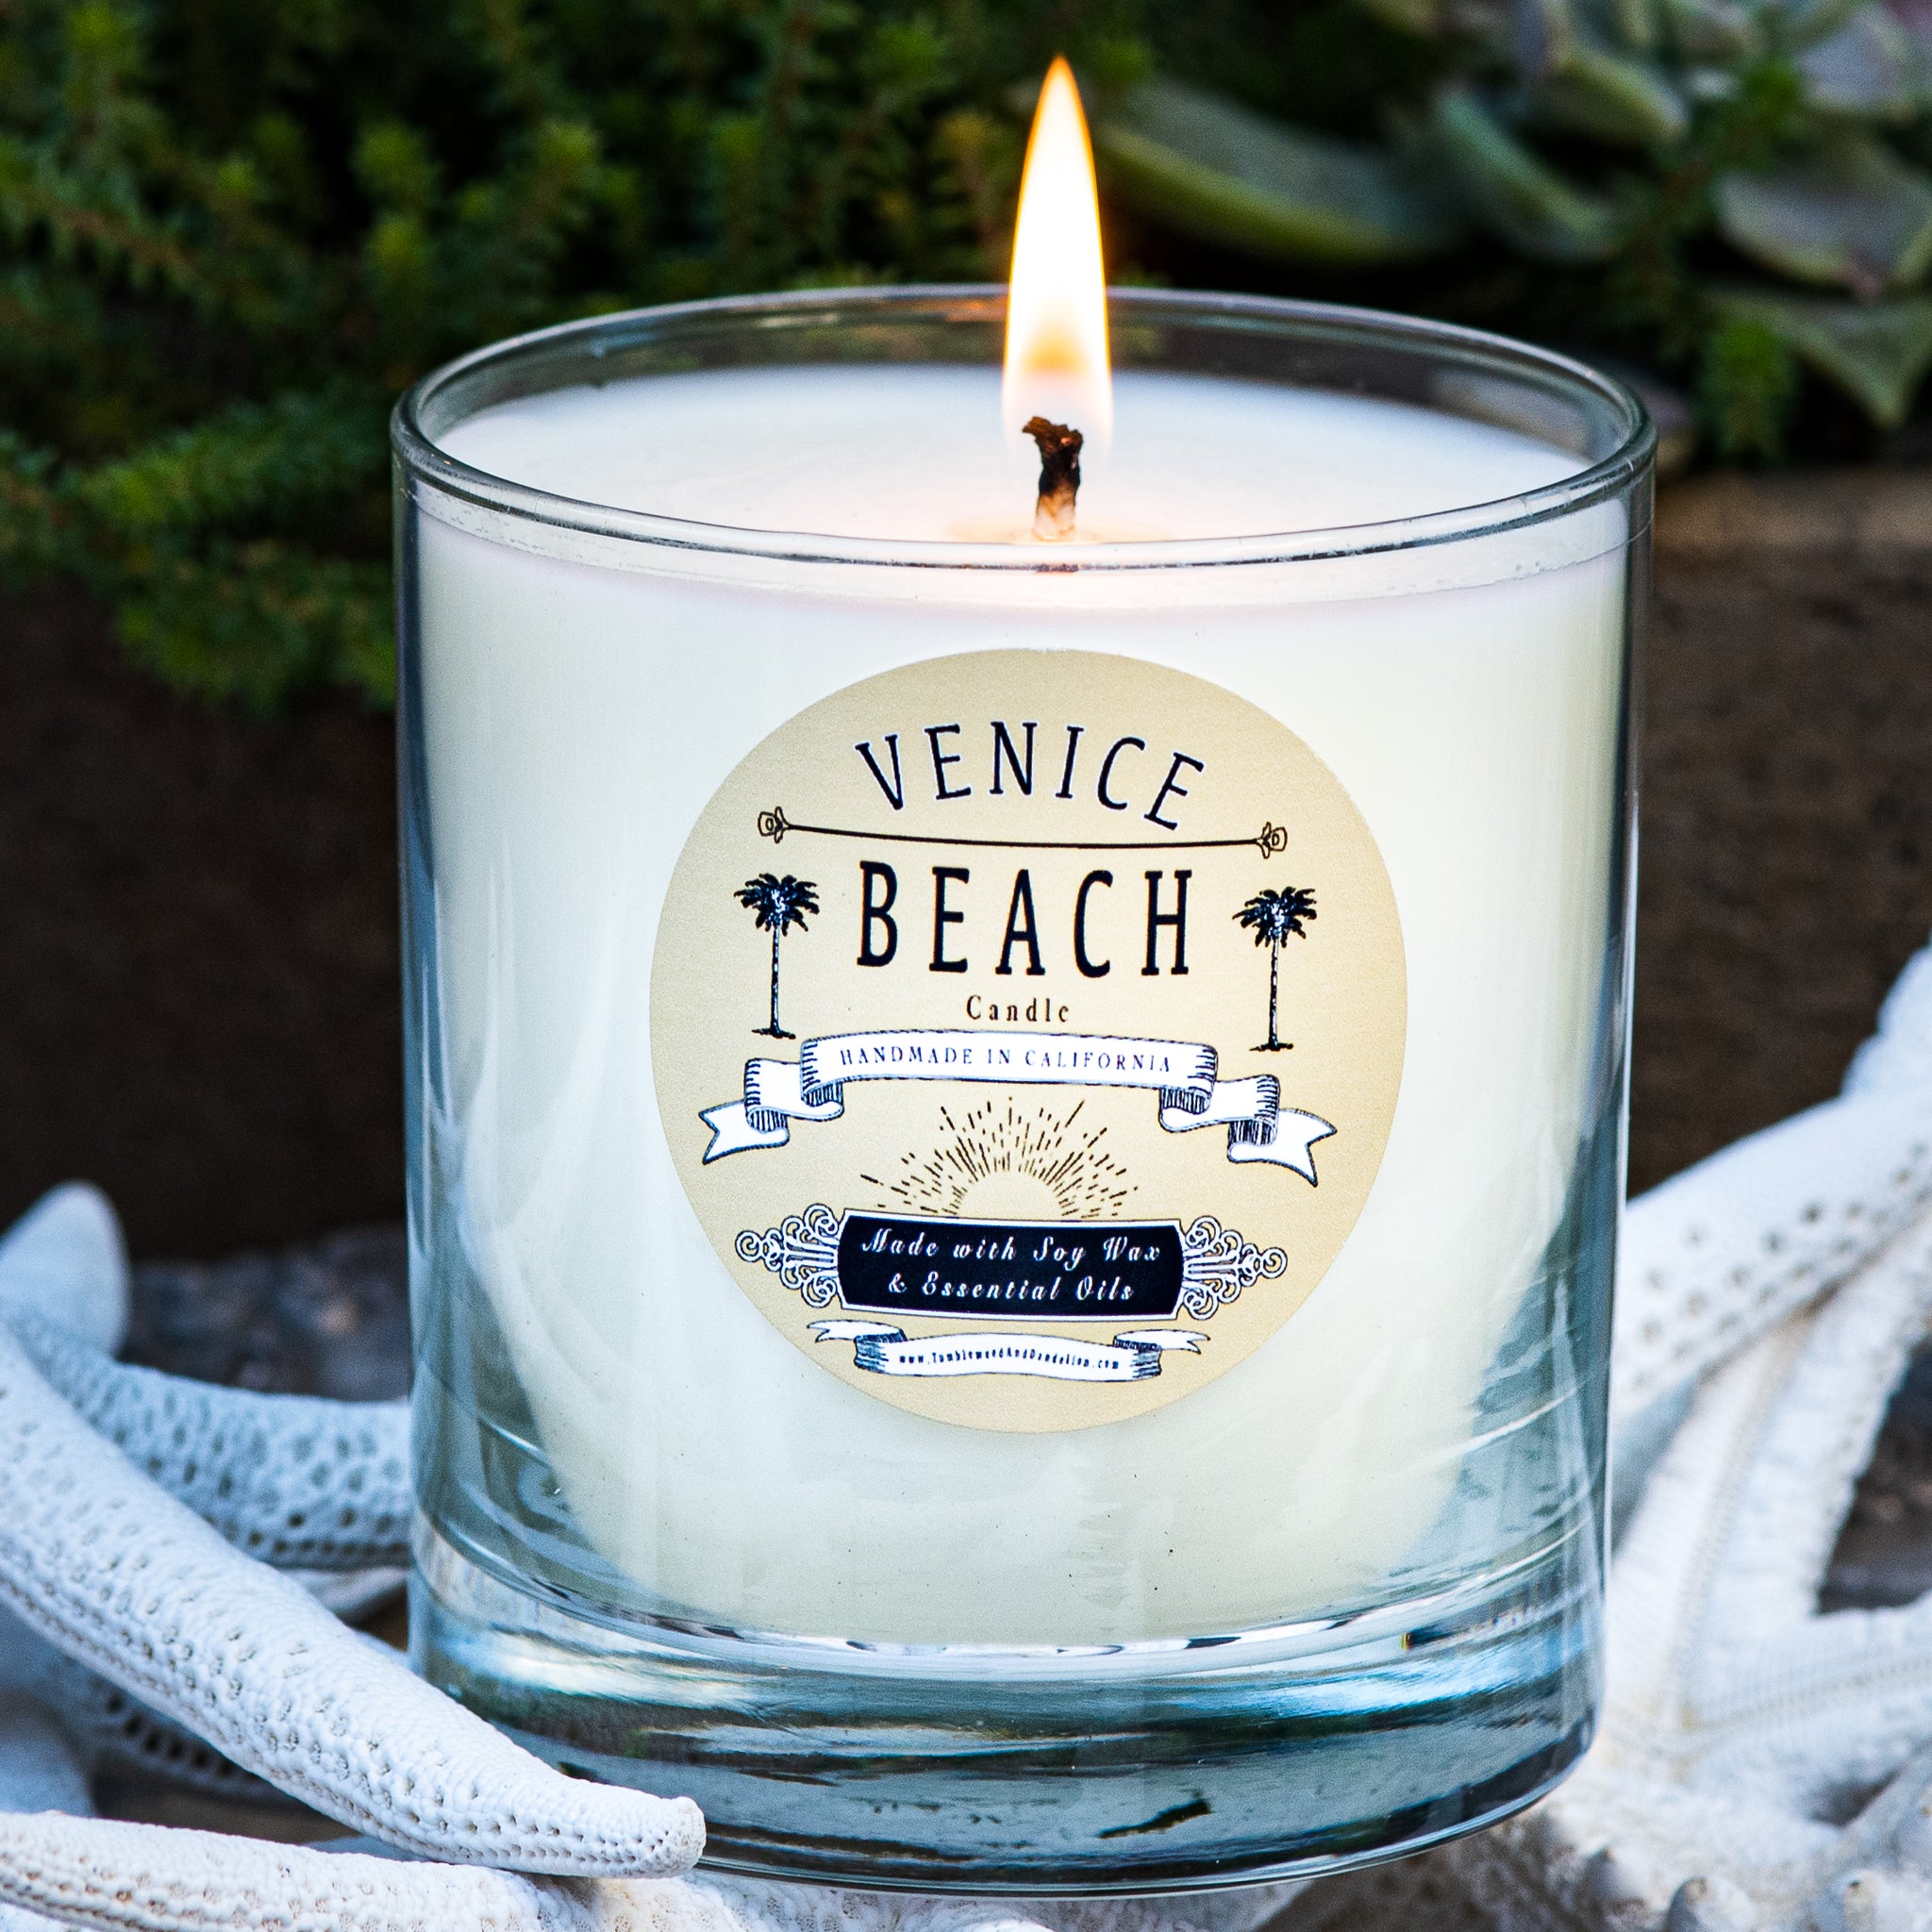 Venice Beach Candle  Beach candle, Candles, Venice beach